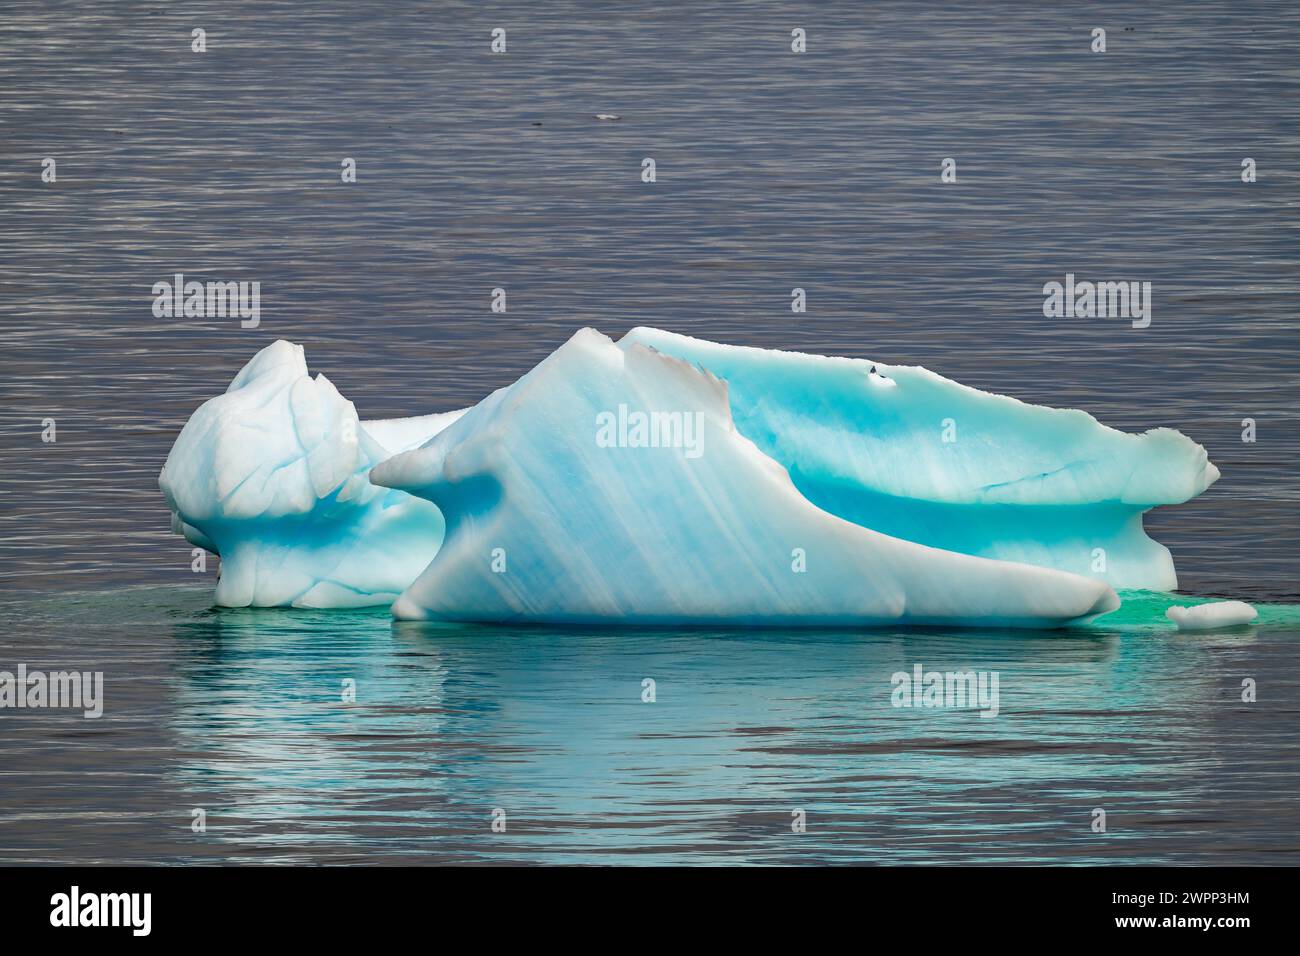 Faszinierende Formen und Farben des Eisbergs entlang der Küste der antarktischen Halbinsel. Stockfoto